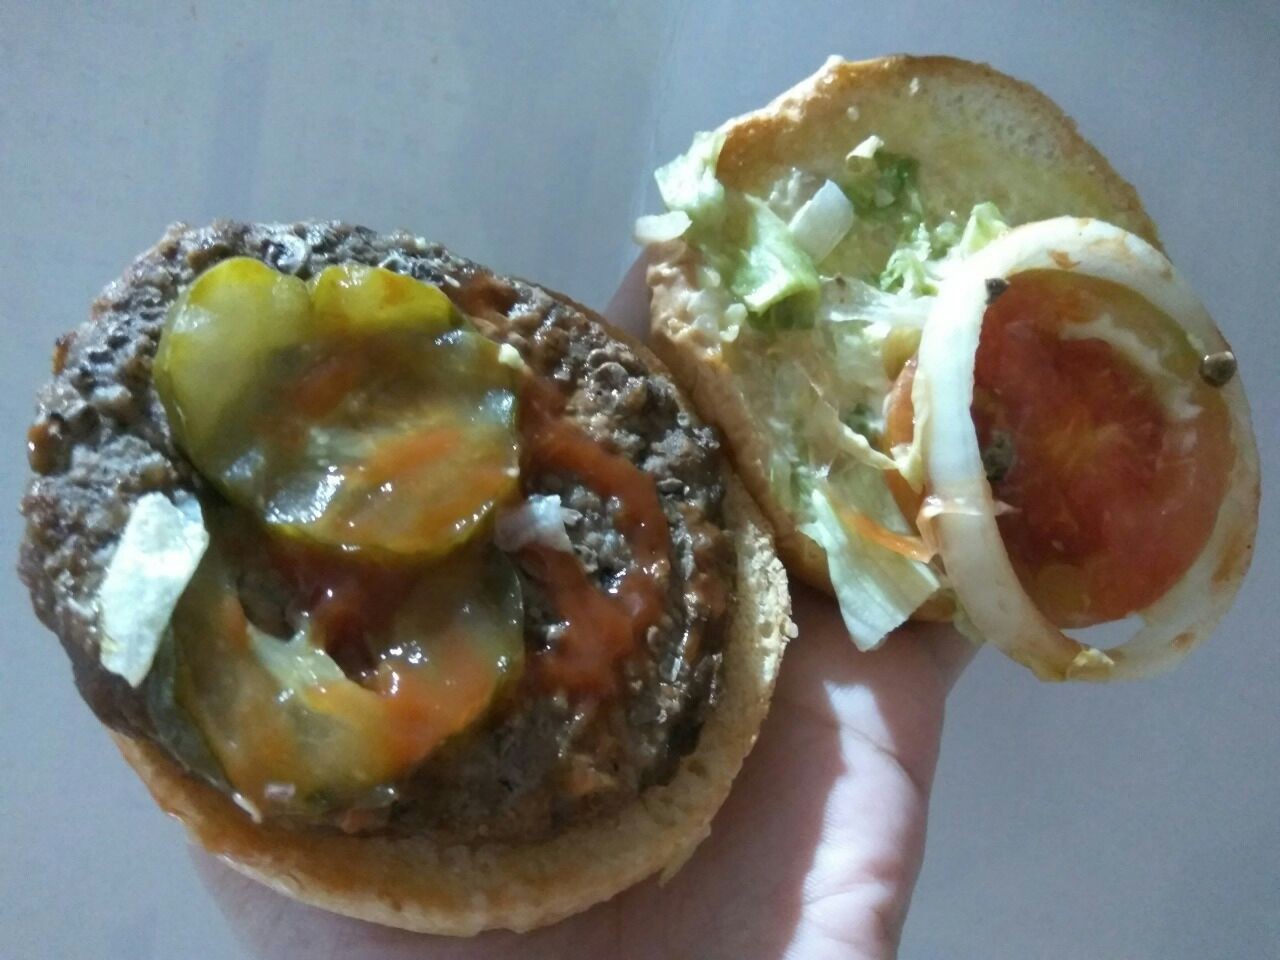 Burger real pada saat beli, isinya: hanya ada 1 bawang bombay, 1 slice tomat, 2 pickles, selada hanya beberapa helai dan kecil, 1 beef patty.